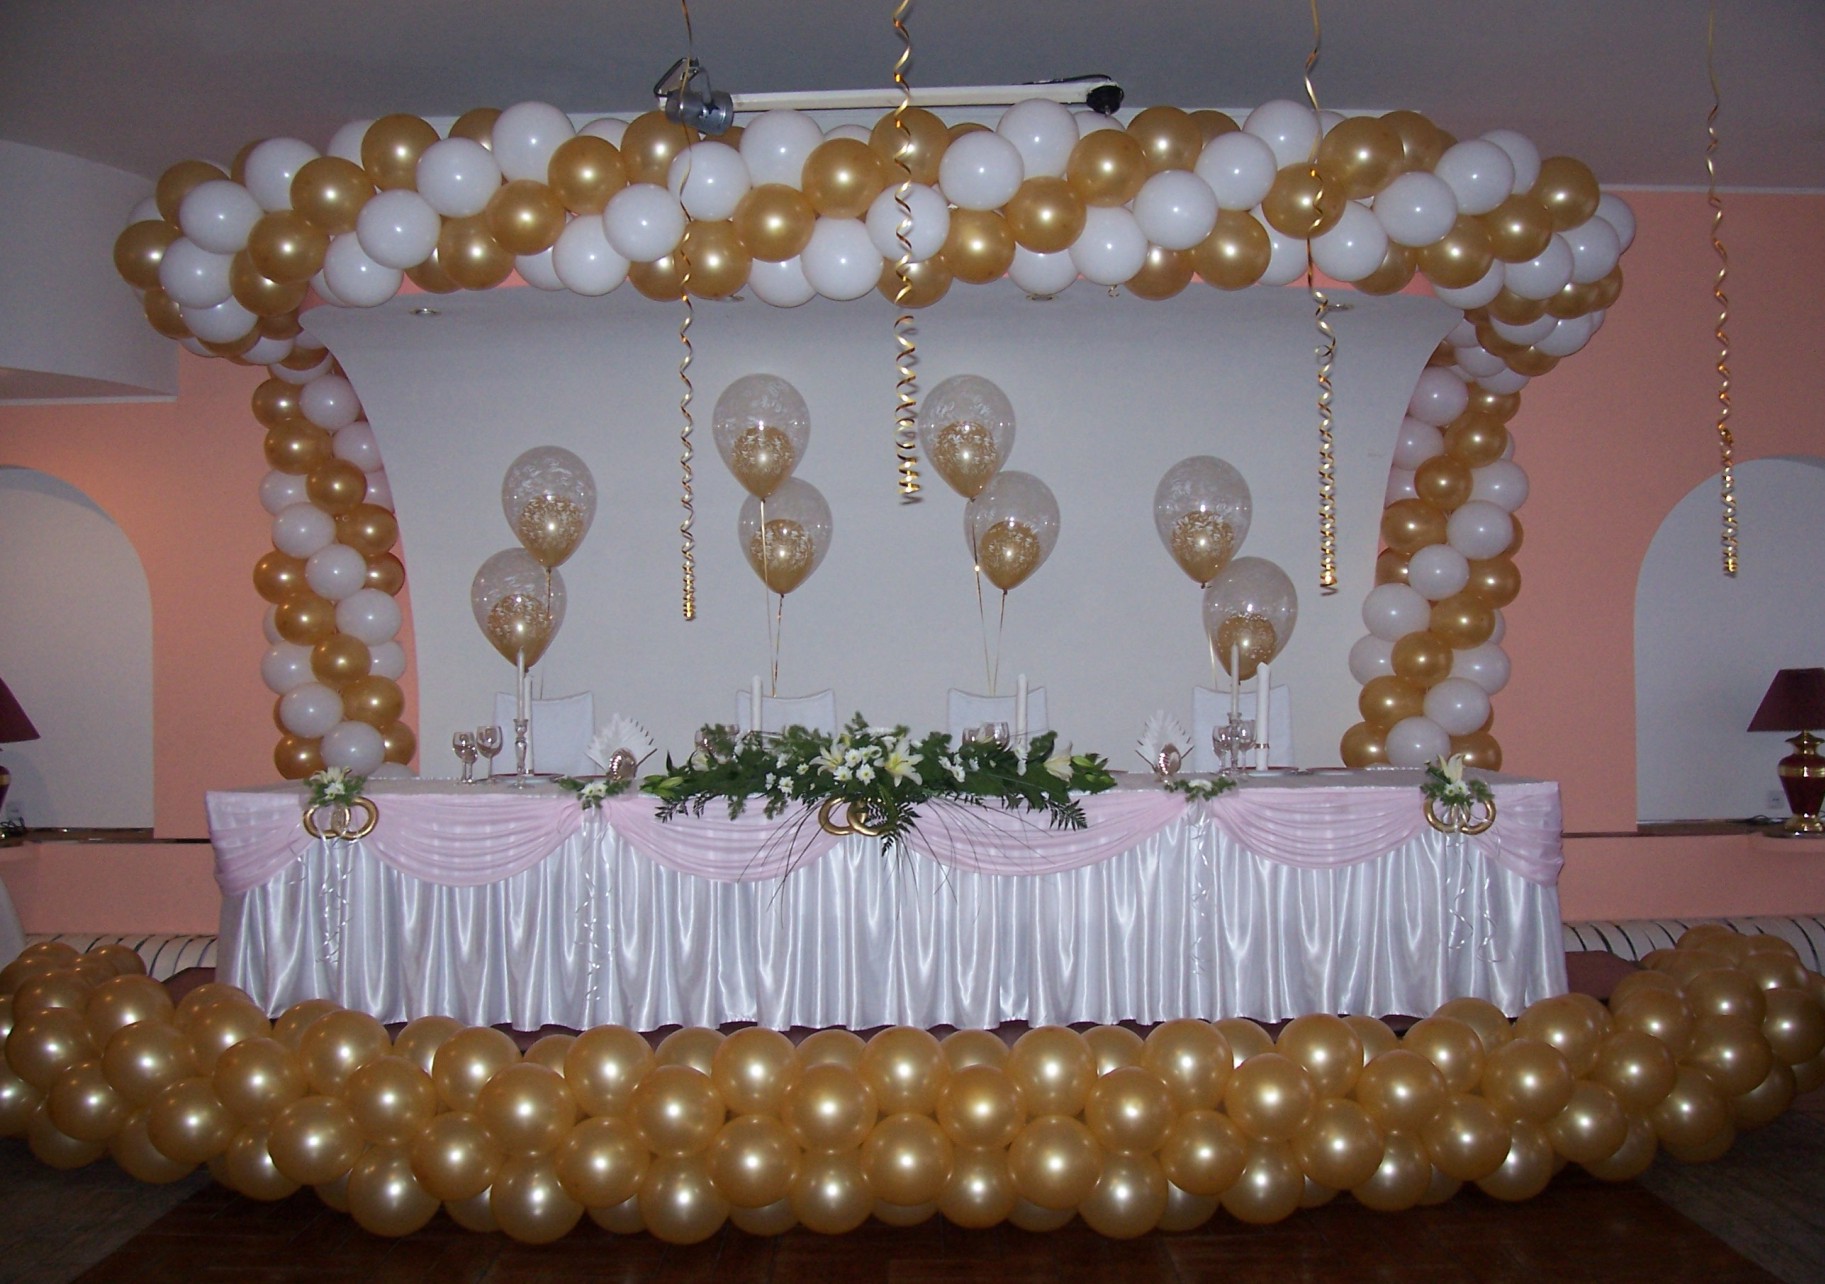 украшение банкетного зала шарами на свадьбу